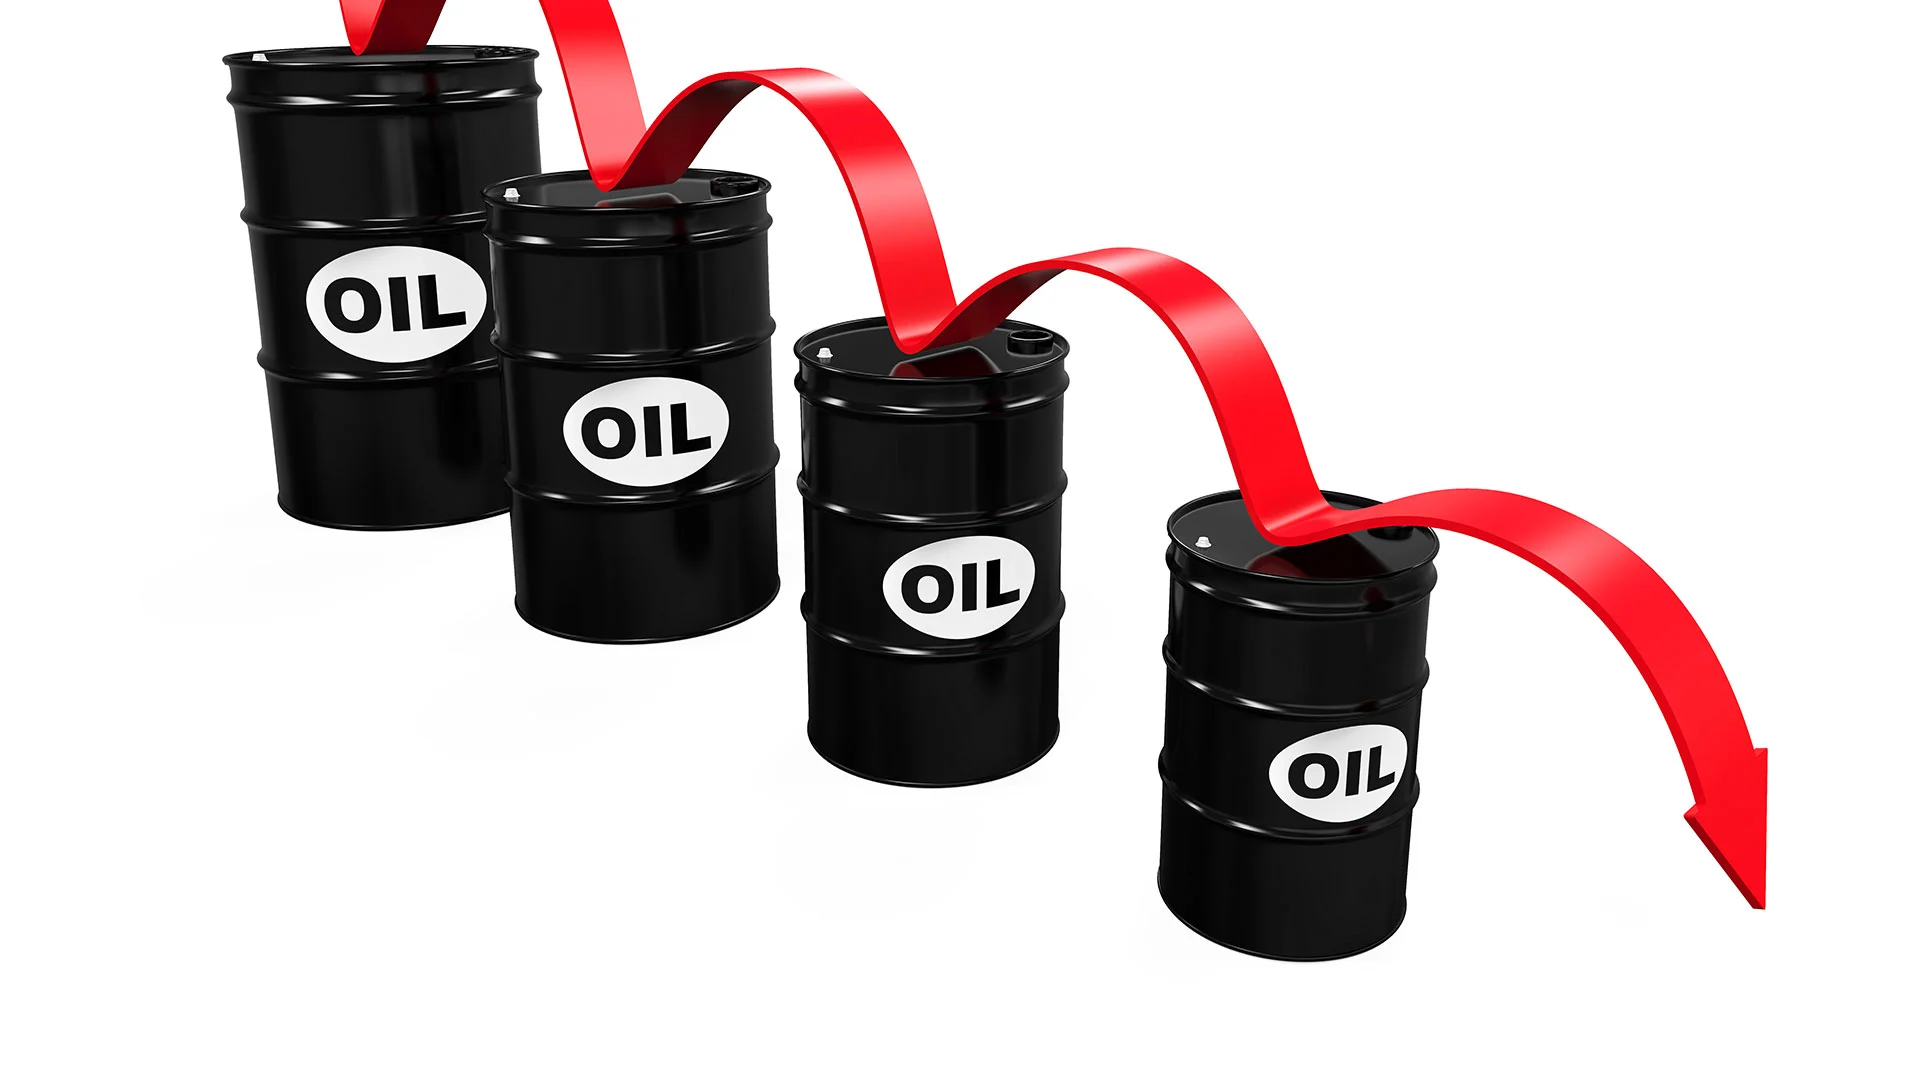 Brent&#8209;Rohöl und Heizöl immer billiger – Warum sich Verbraucher dennoch Sorgen machen müssen (Foto: Shutterstock)